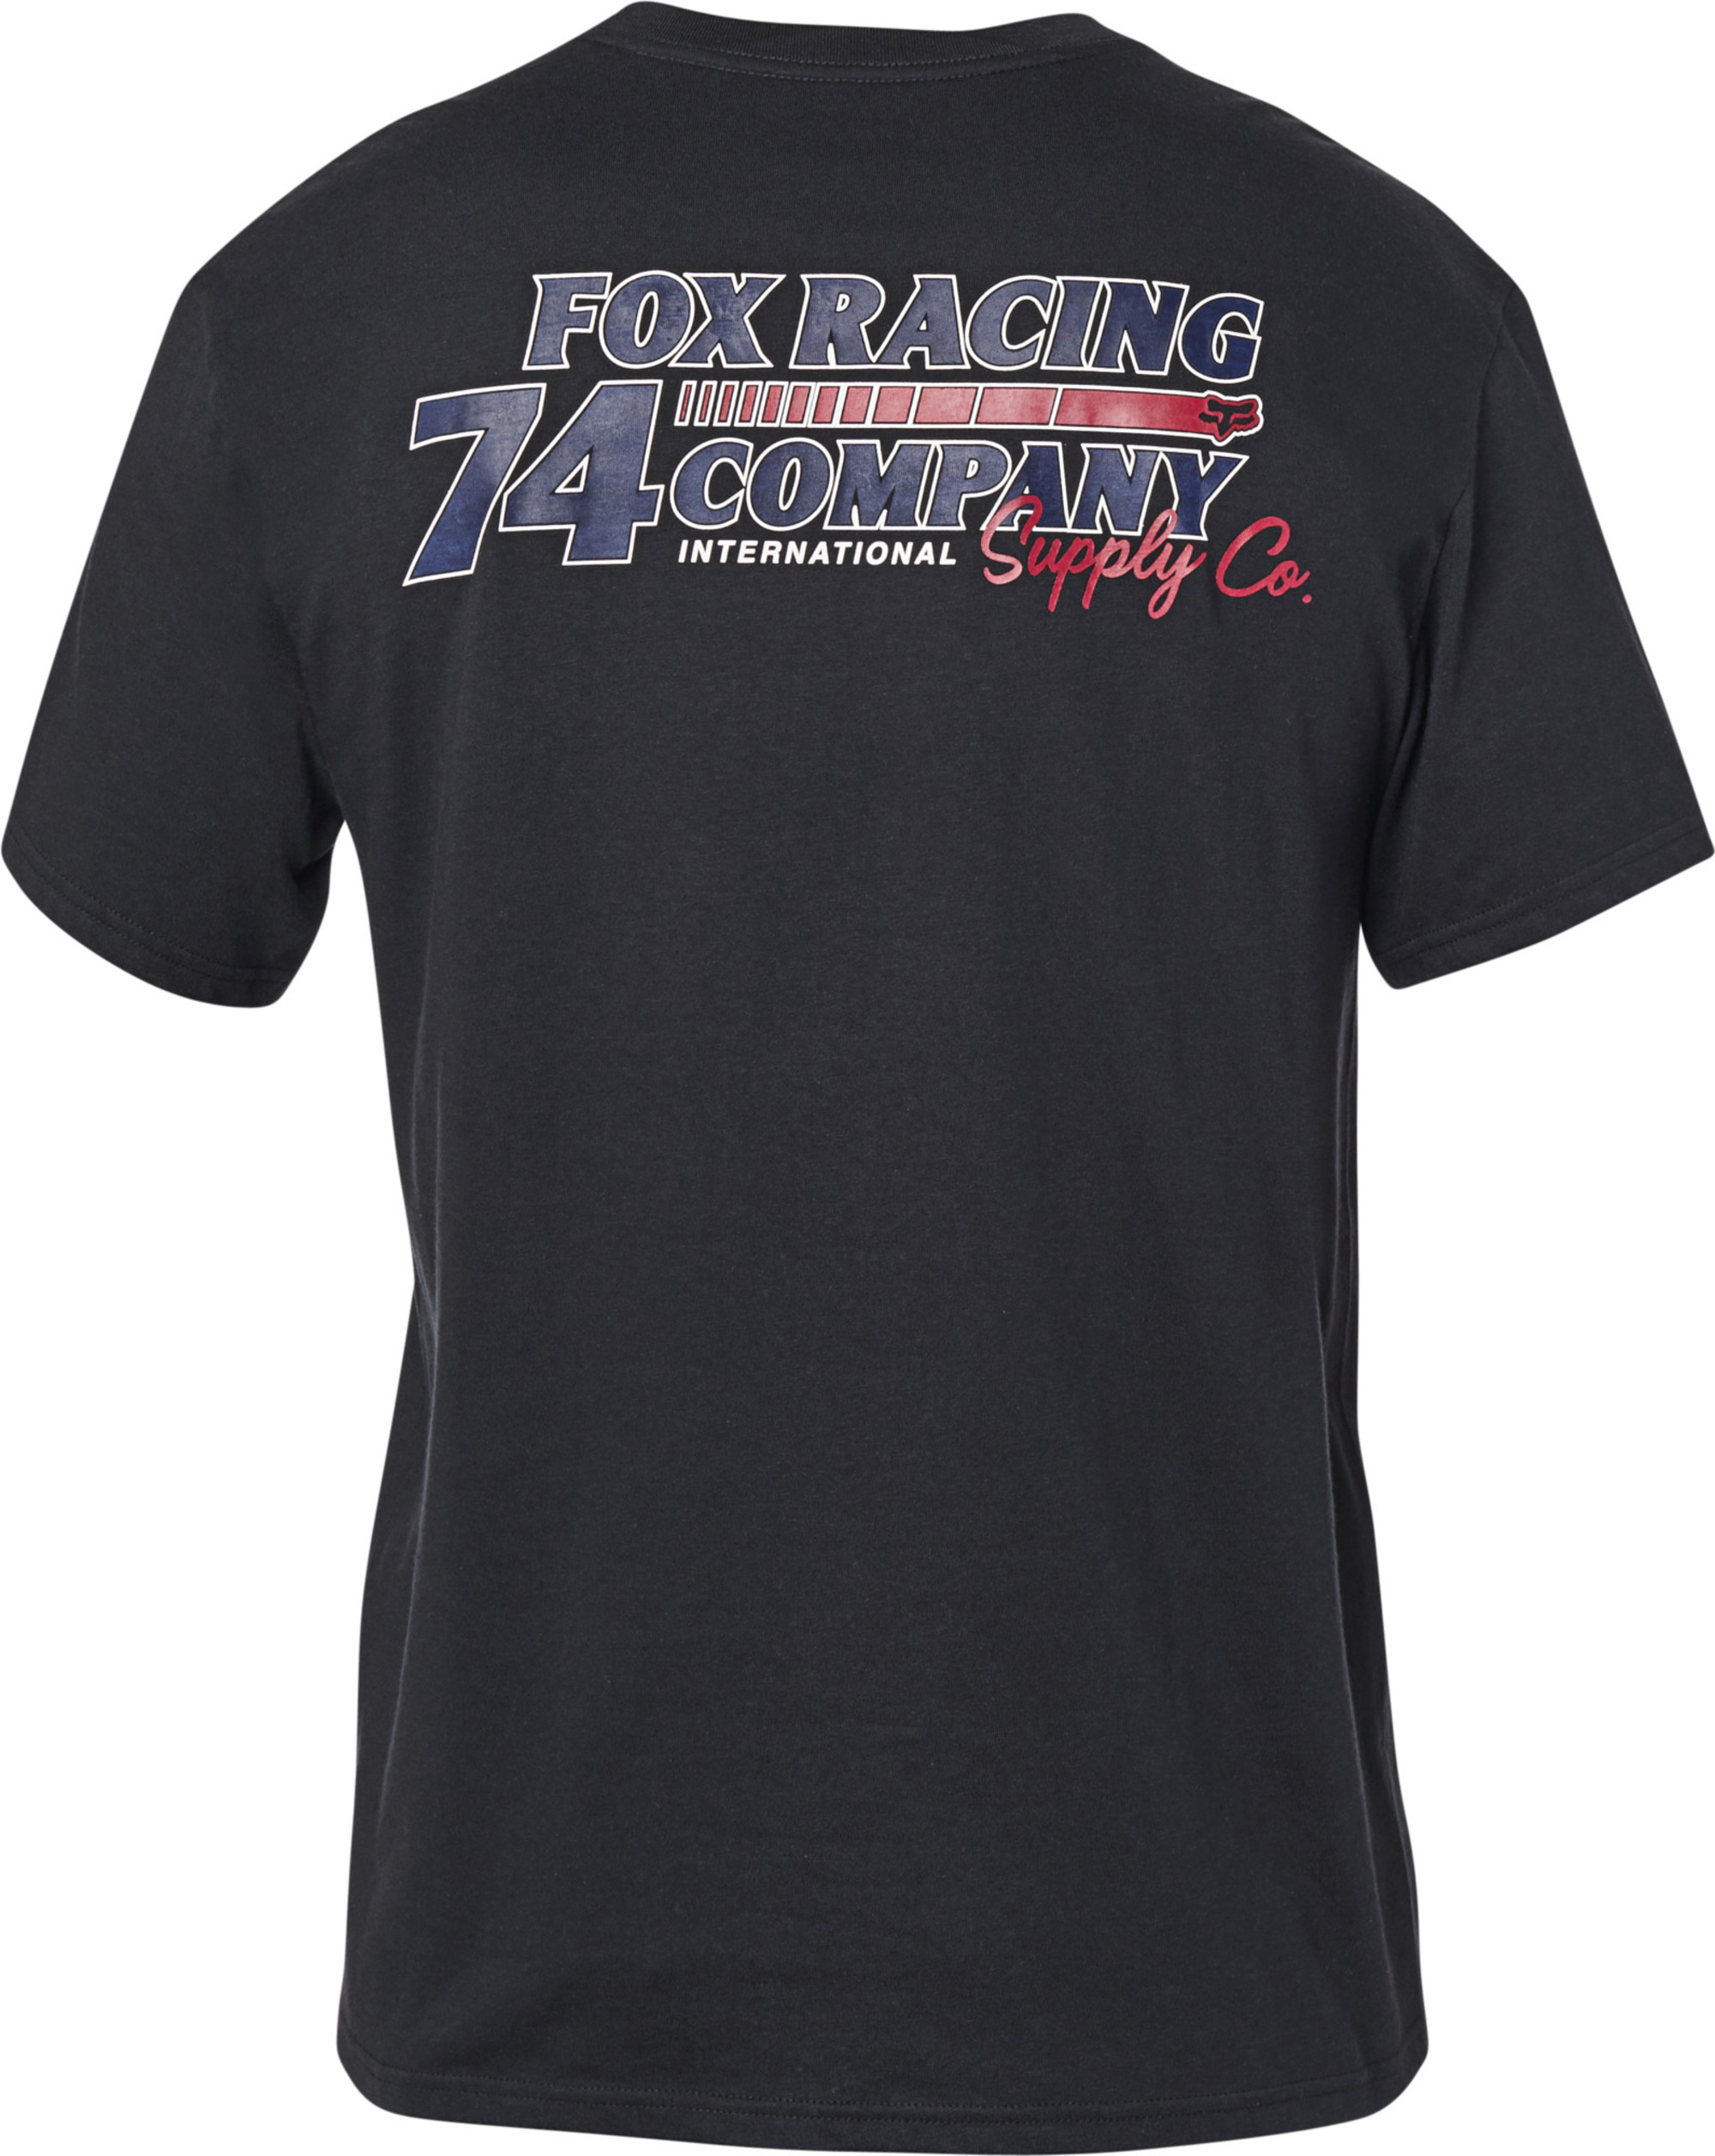 fox racing t-shirt shirts for men 74 worldwide pckt